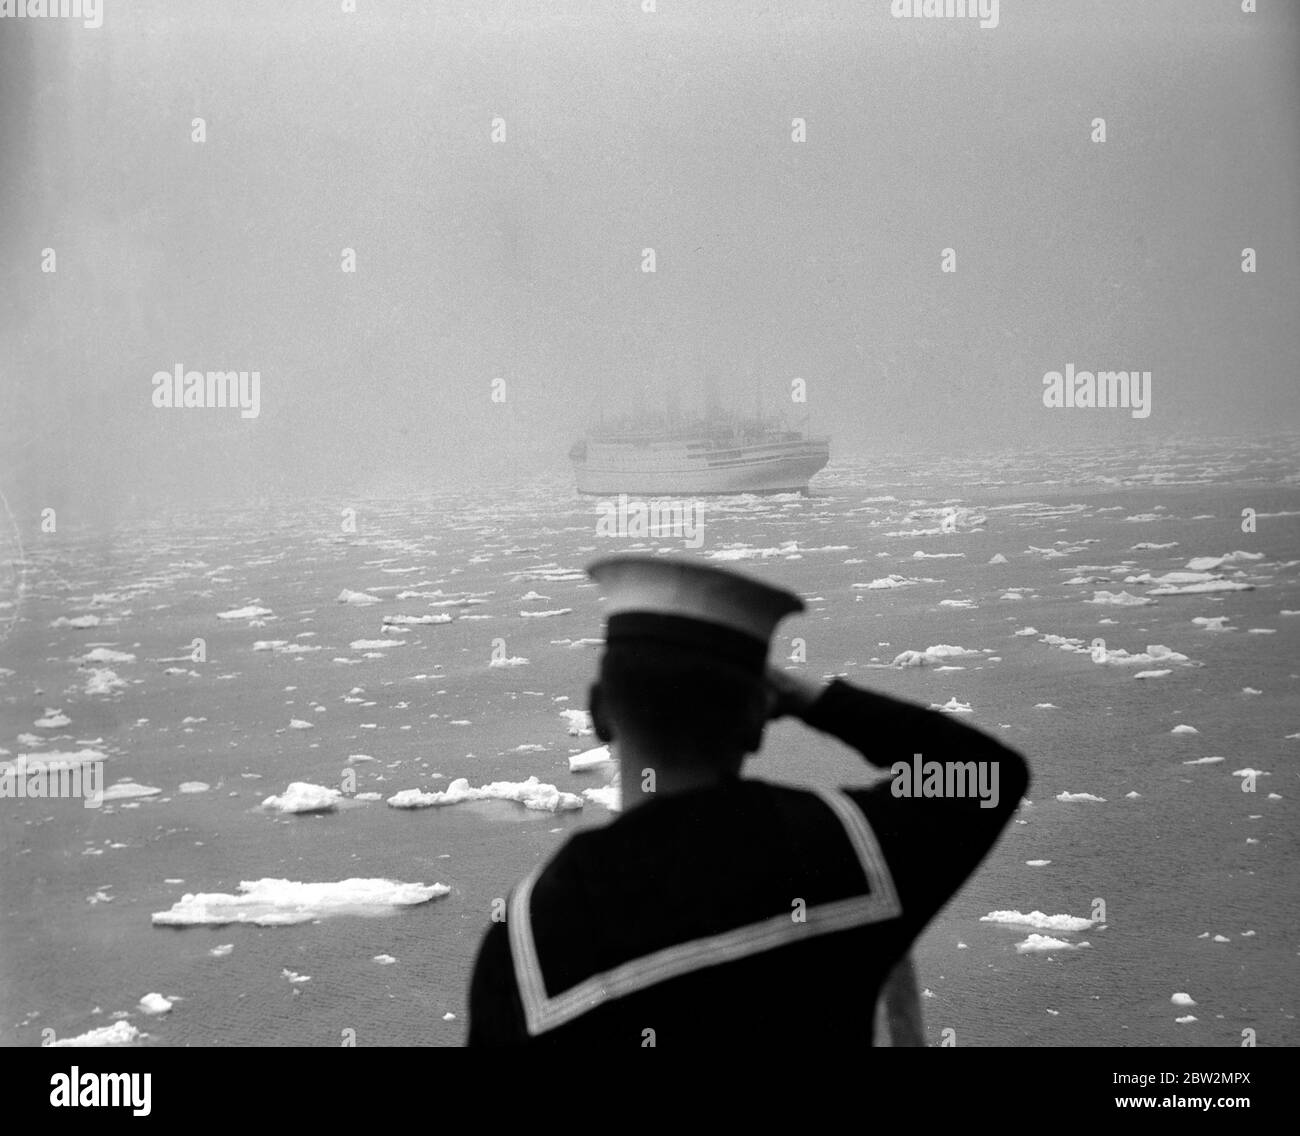 Il giro reale del Canada e degli Stati Uniti da re George VI e la regina Elisabetta 1939 - nebbia maltempo E ghiaccio nell'Atlantico settentrionale Foto Stock